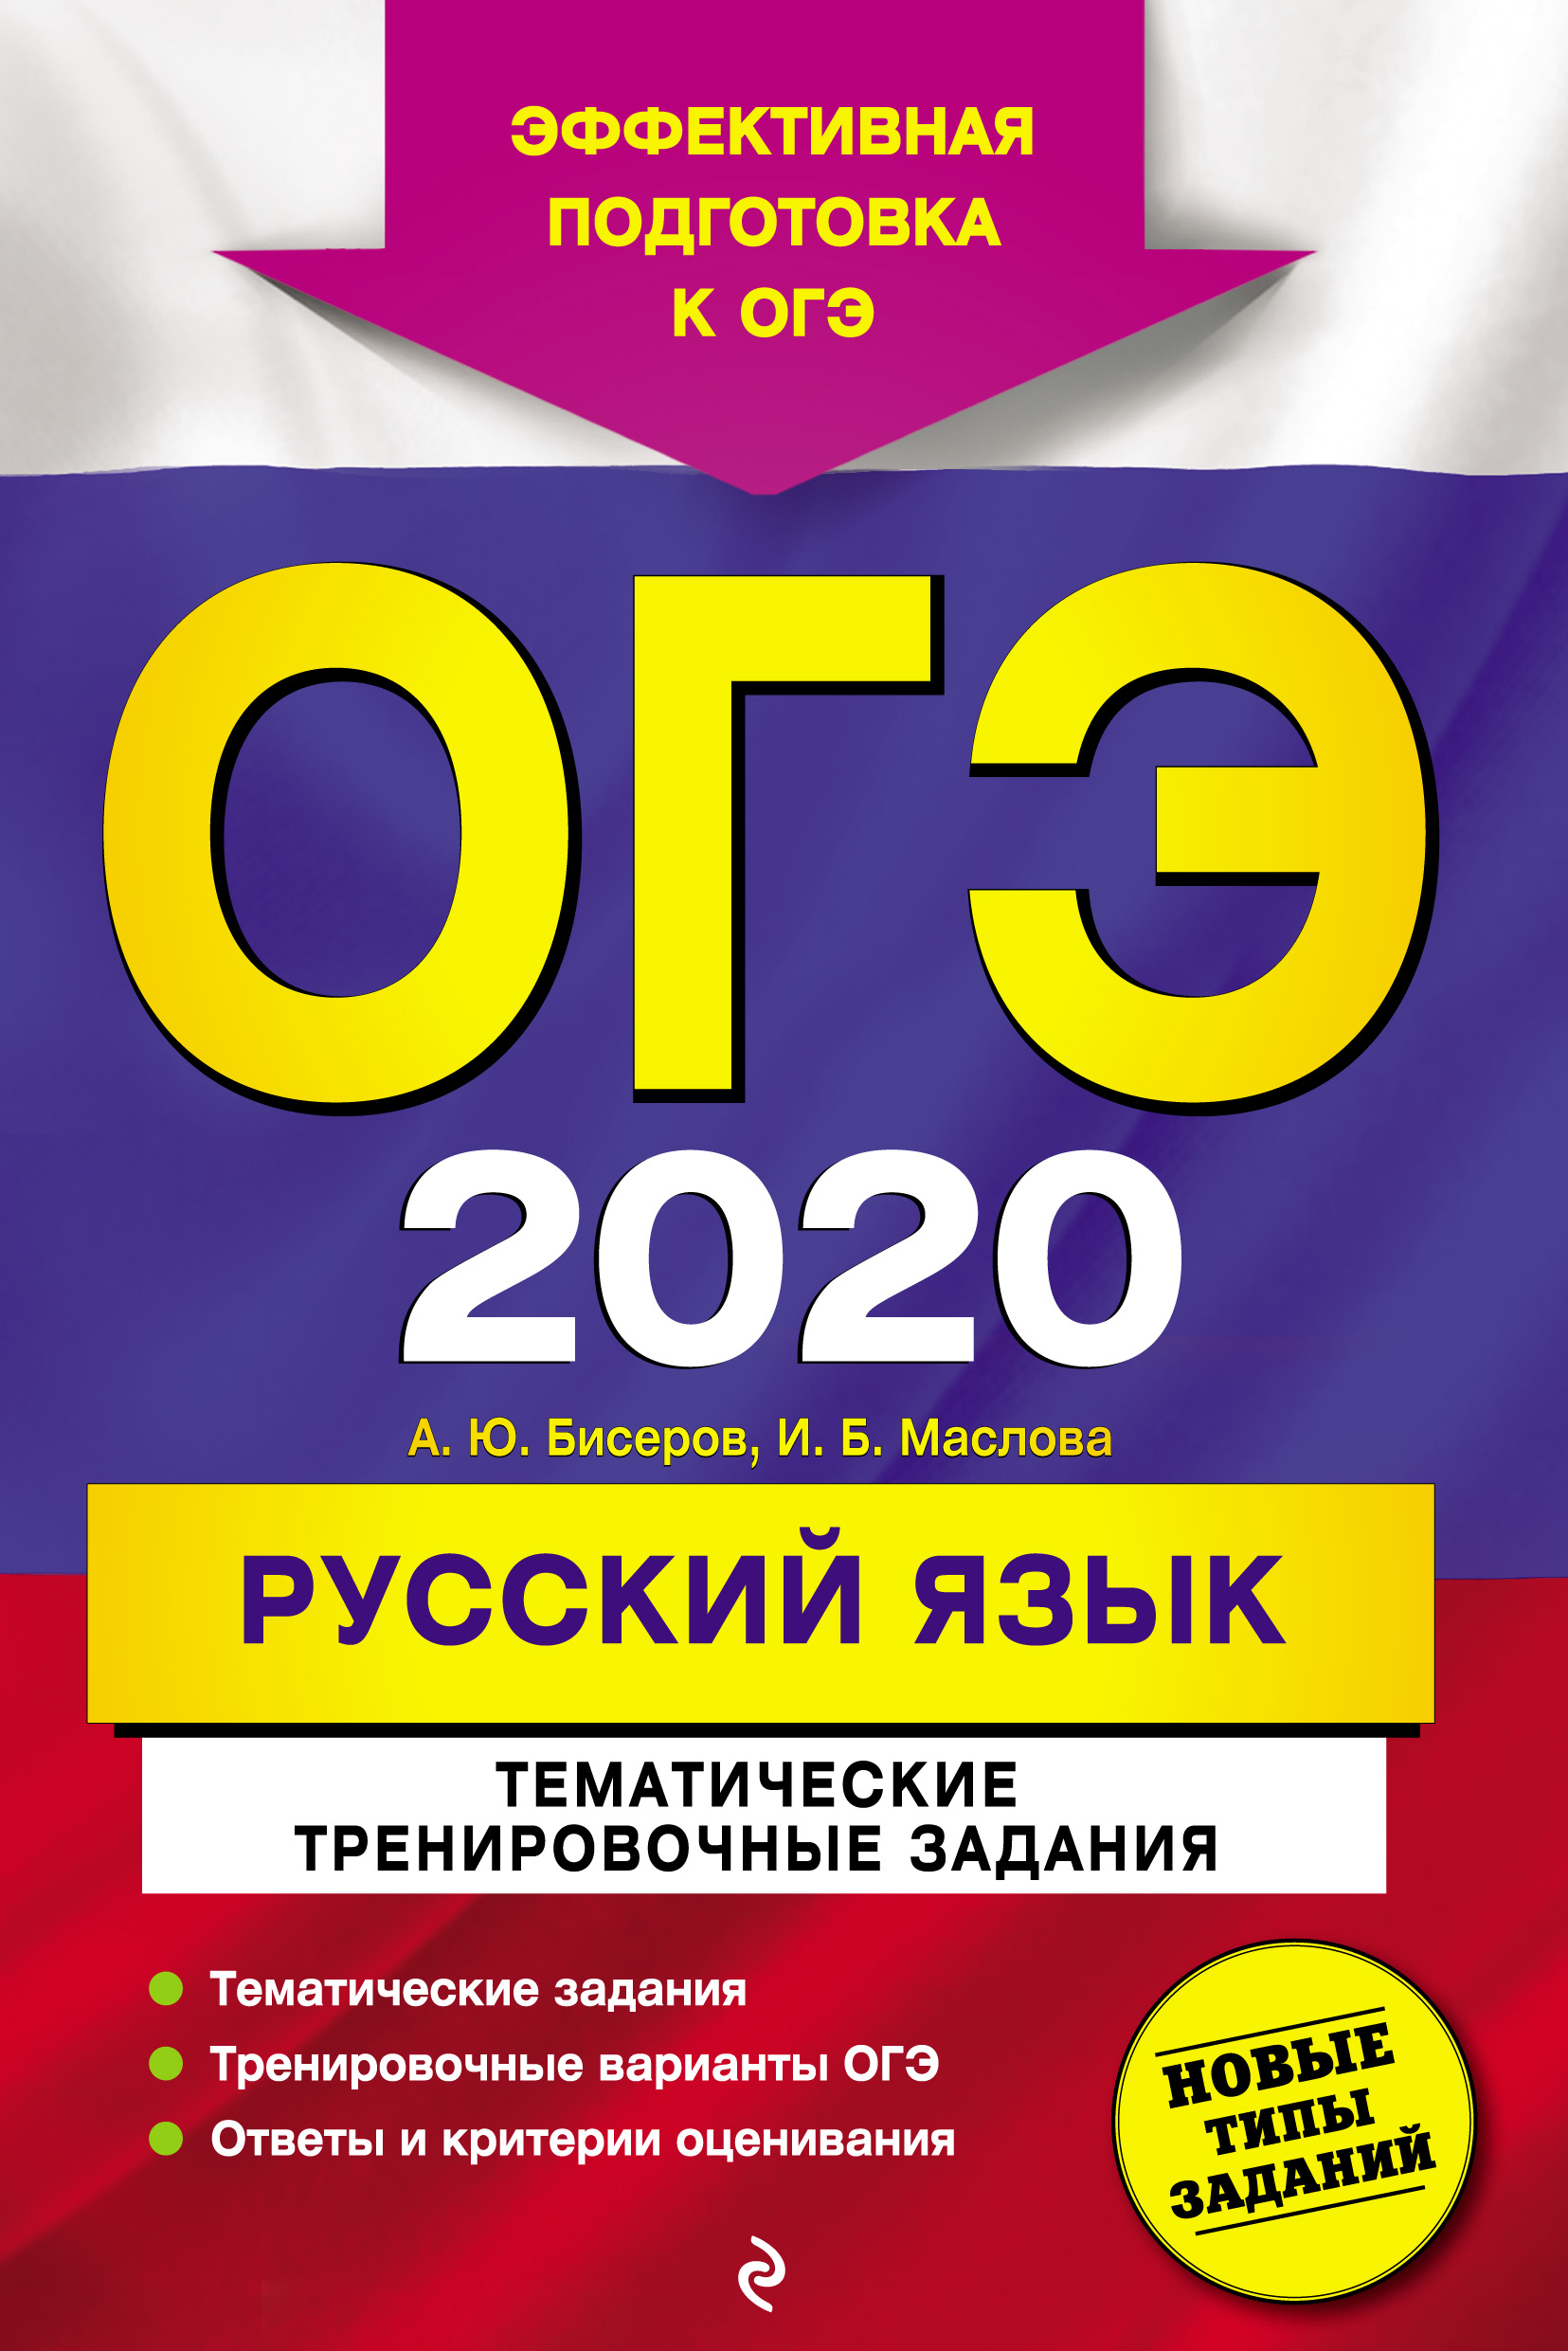 Стол теннисный окоф 2020 амортизационная группа